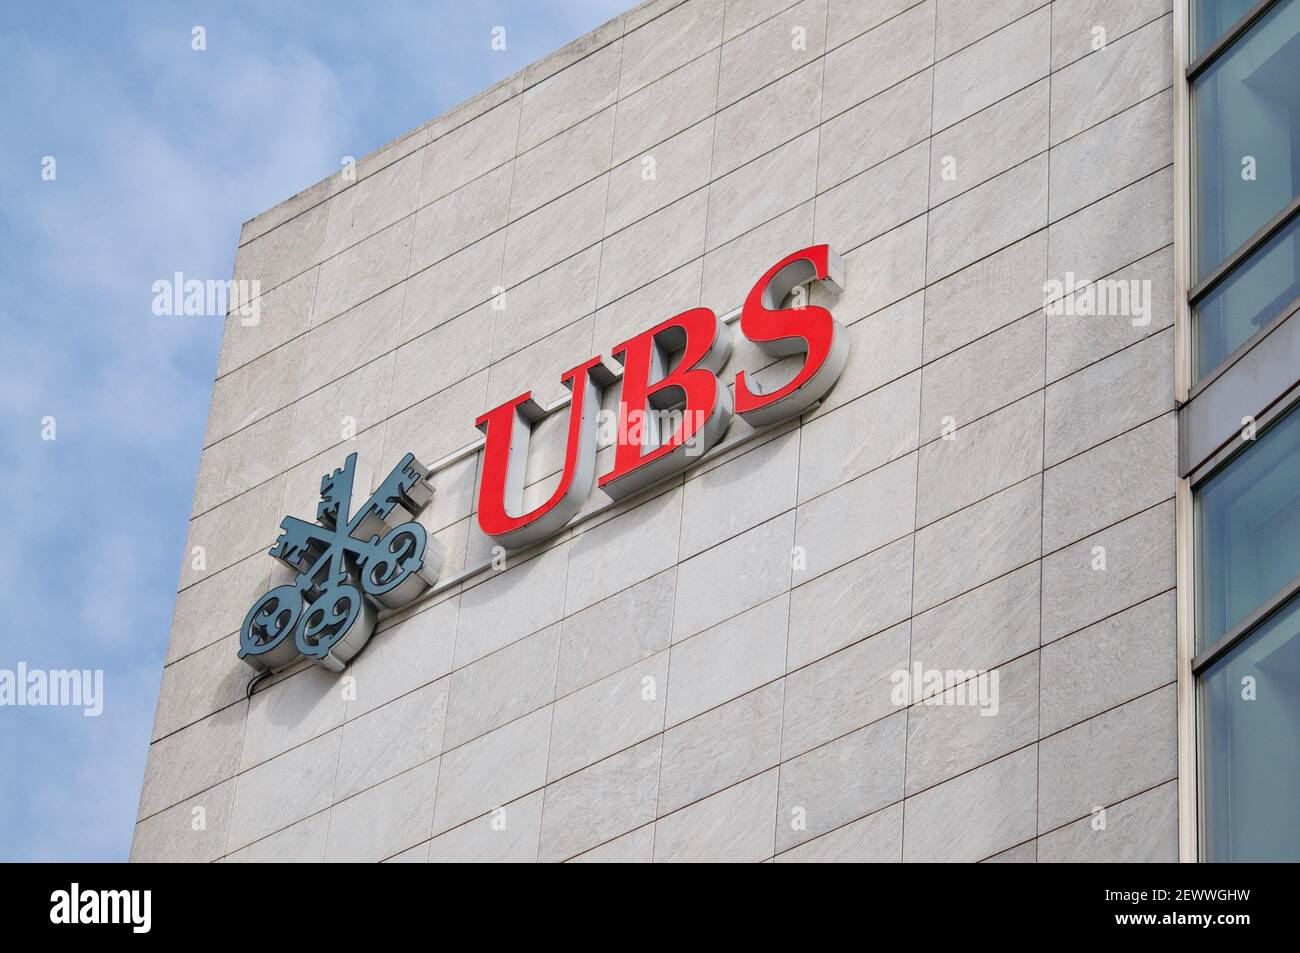 Zug, Suisse - 26 février 2021 : logo UBS Bank accroché à la façade d'un bâtiment à Zug. L'UBS est l'une des principales banques en Suisse et en Suisse Banque D'Images